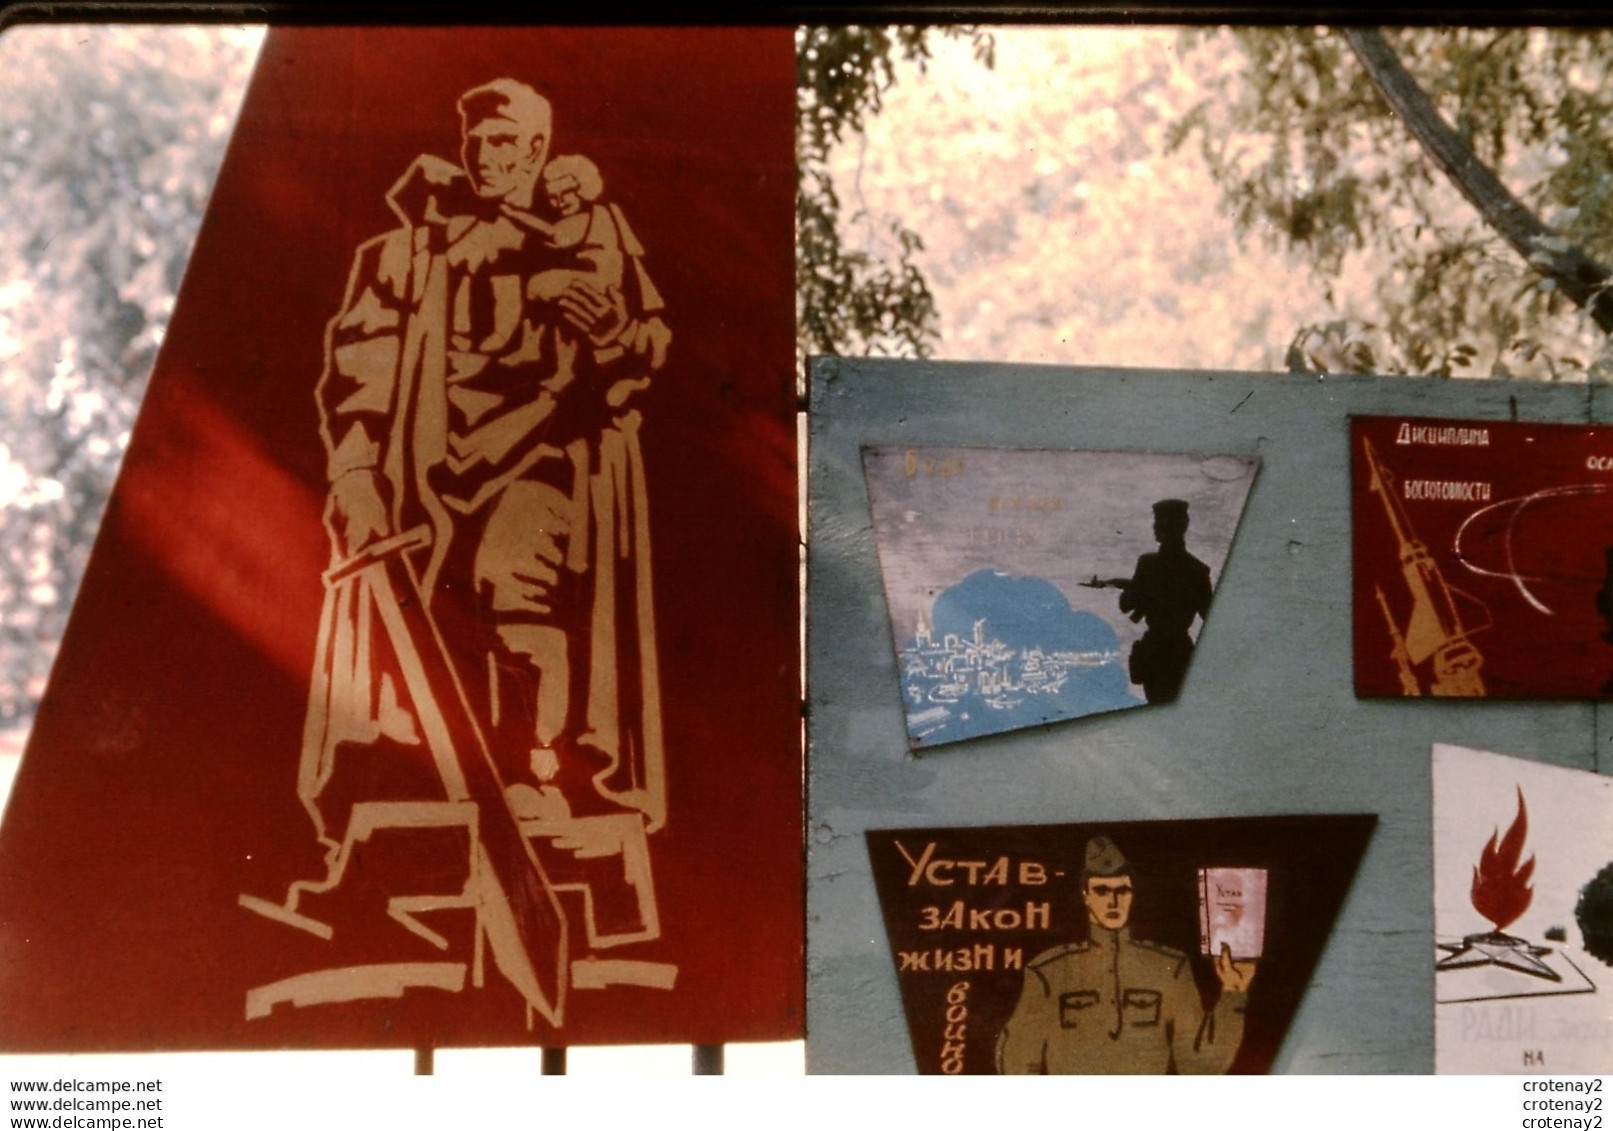 Photo Diapo Diapositive Slide URSS Depuis 1945 N°7 Une Armée Pour La Paix ? Académie FROUNZE MOSCOU En 1967  VOIR ZOOM - Diapositivas